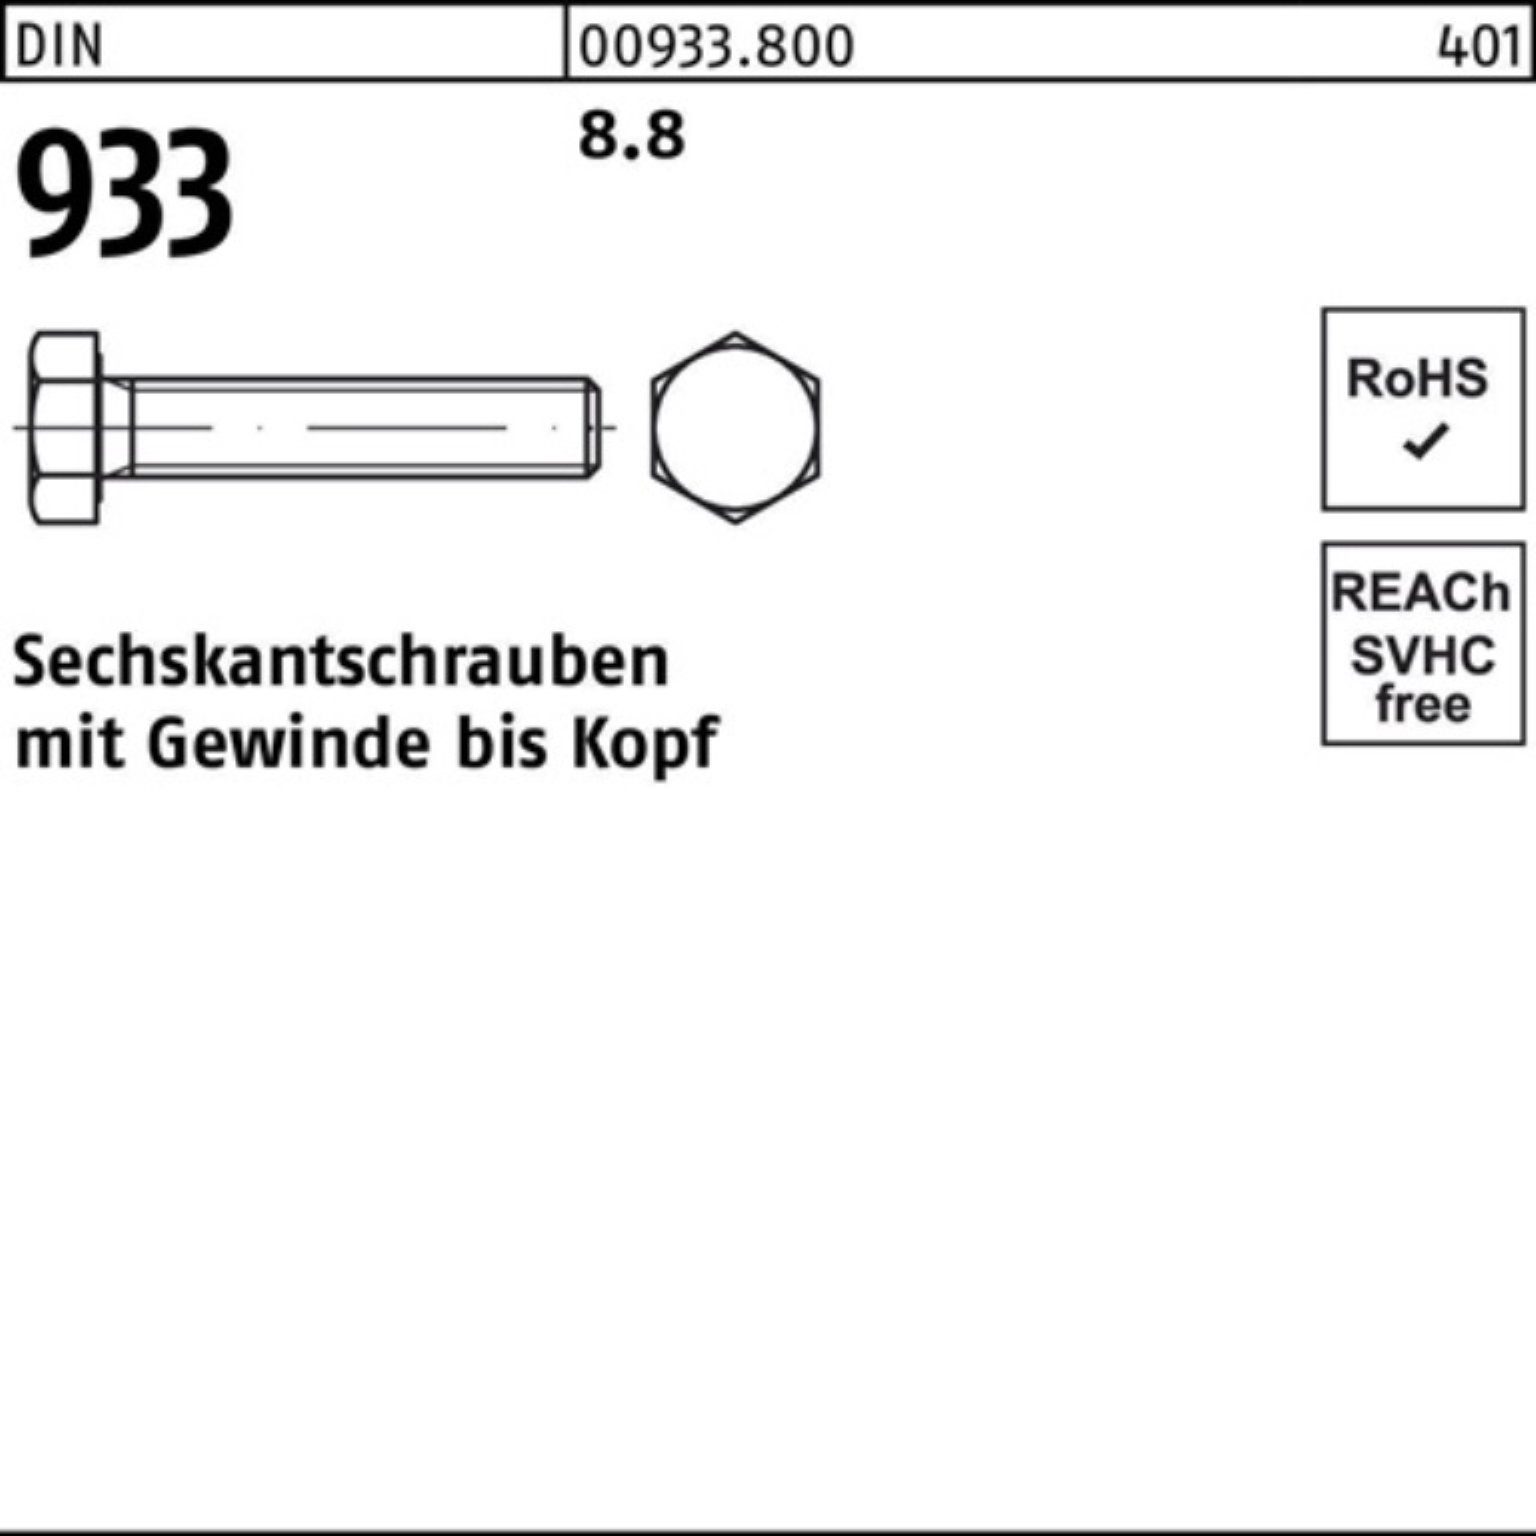 Reyher Sechskantschraube 100er Pack Sechskantschraube Stück 933 933 DIN VG M16x DIN 25 8.8 95